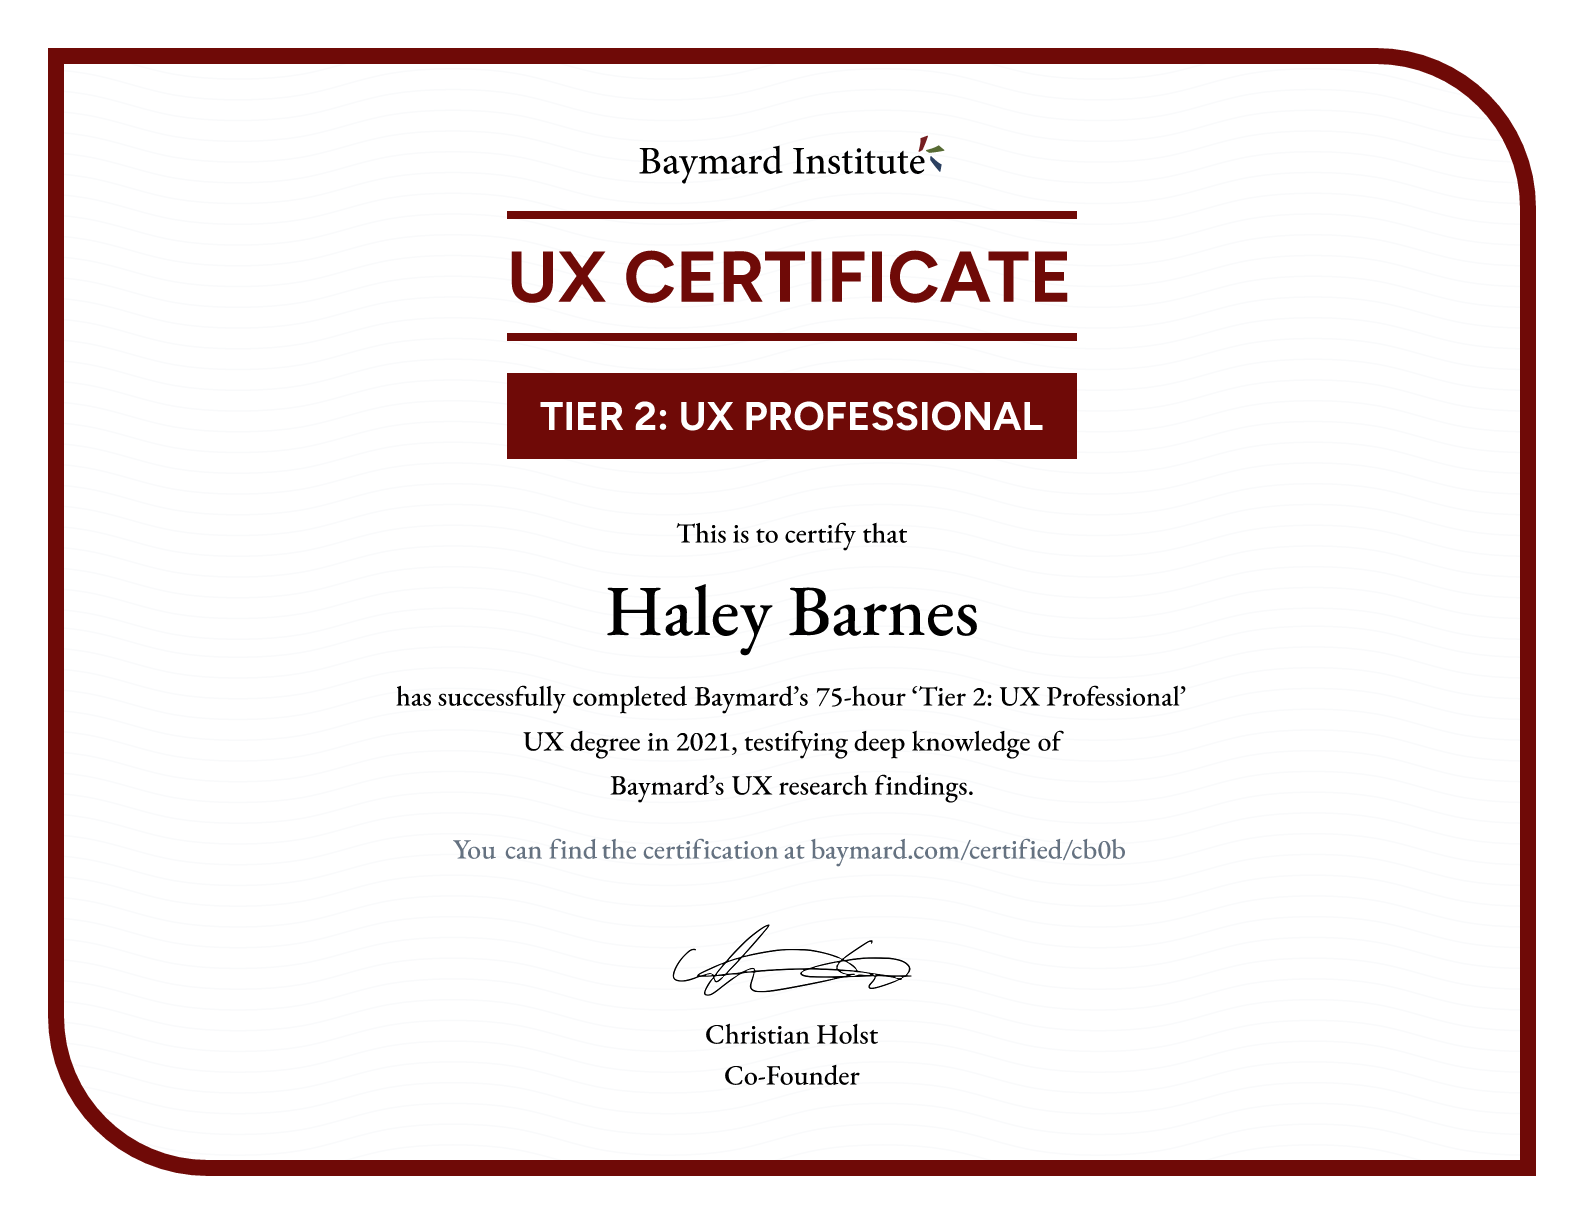 Haley Barnes’s certificate